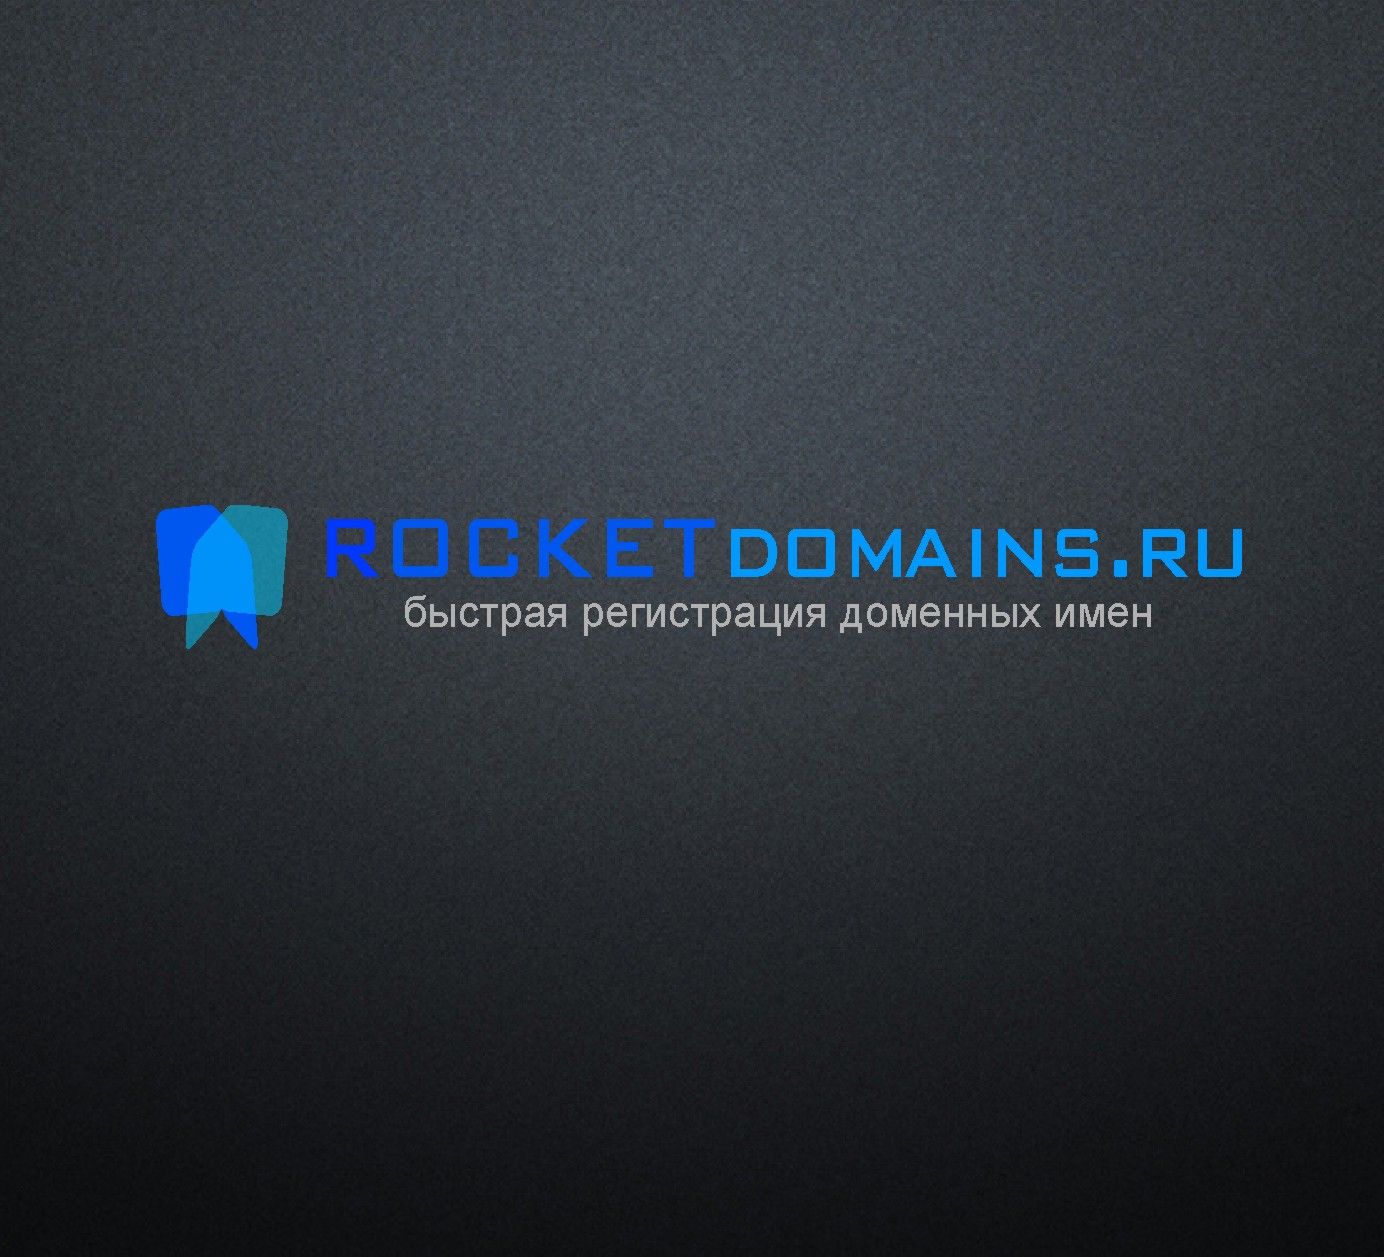 Логотип для регистратора RocketDomains.ru - дизайнер radchuk-ruslan